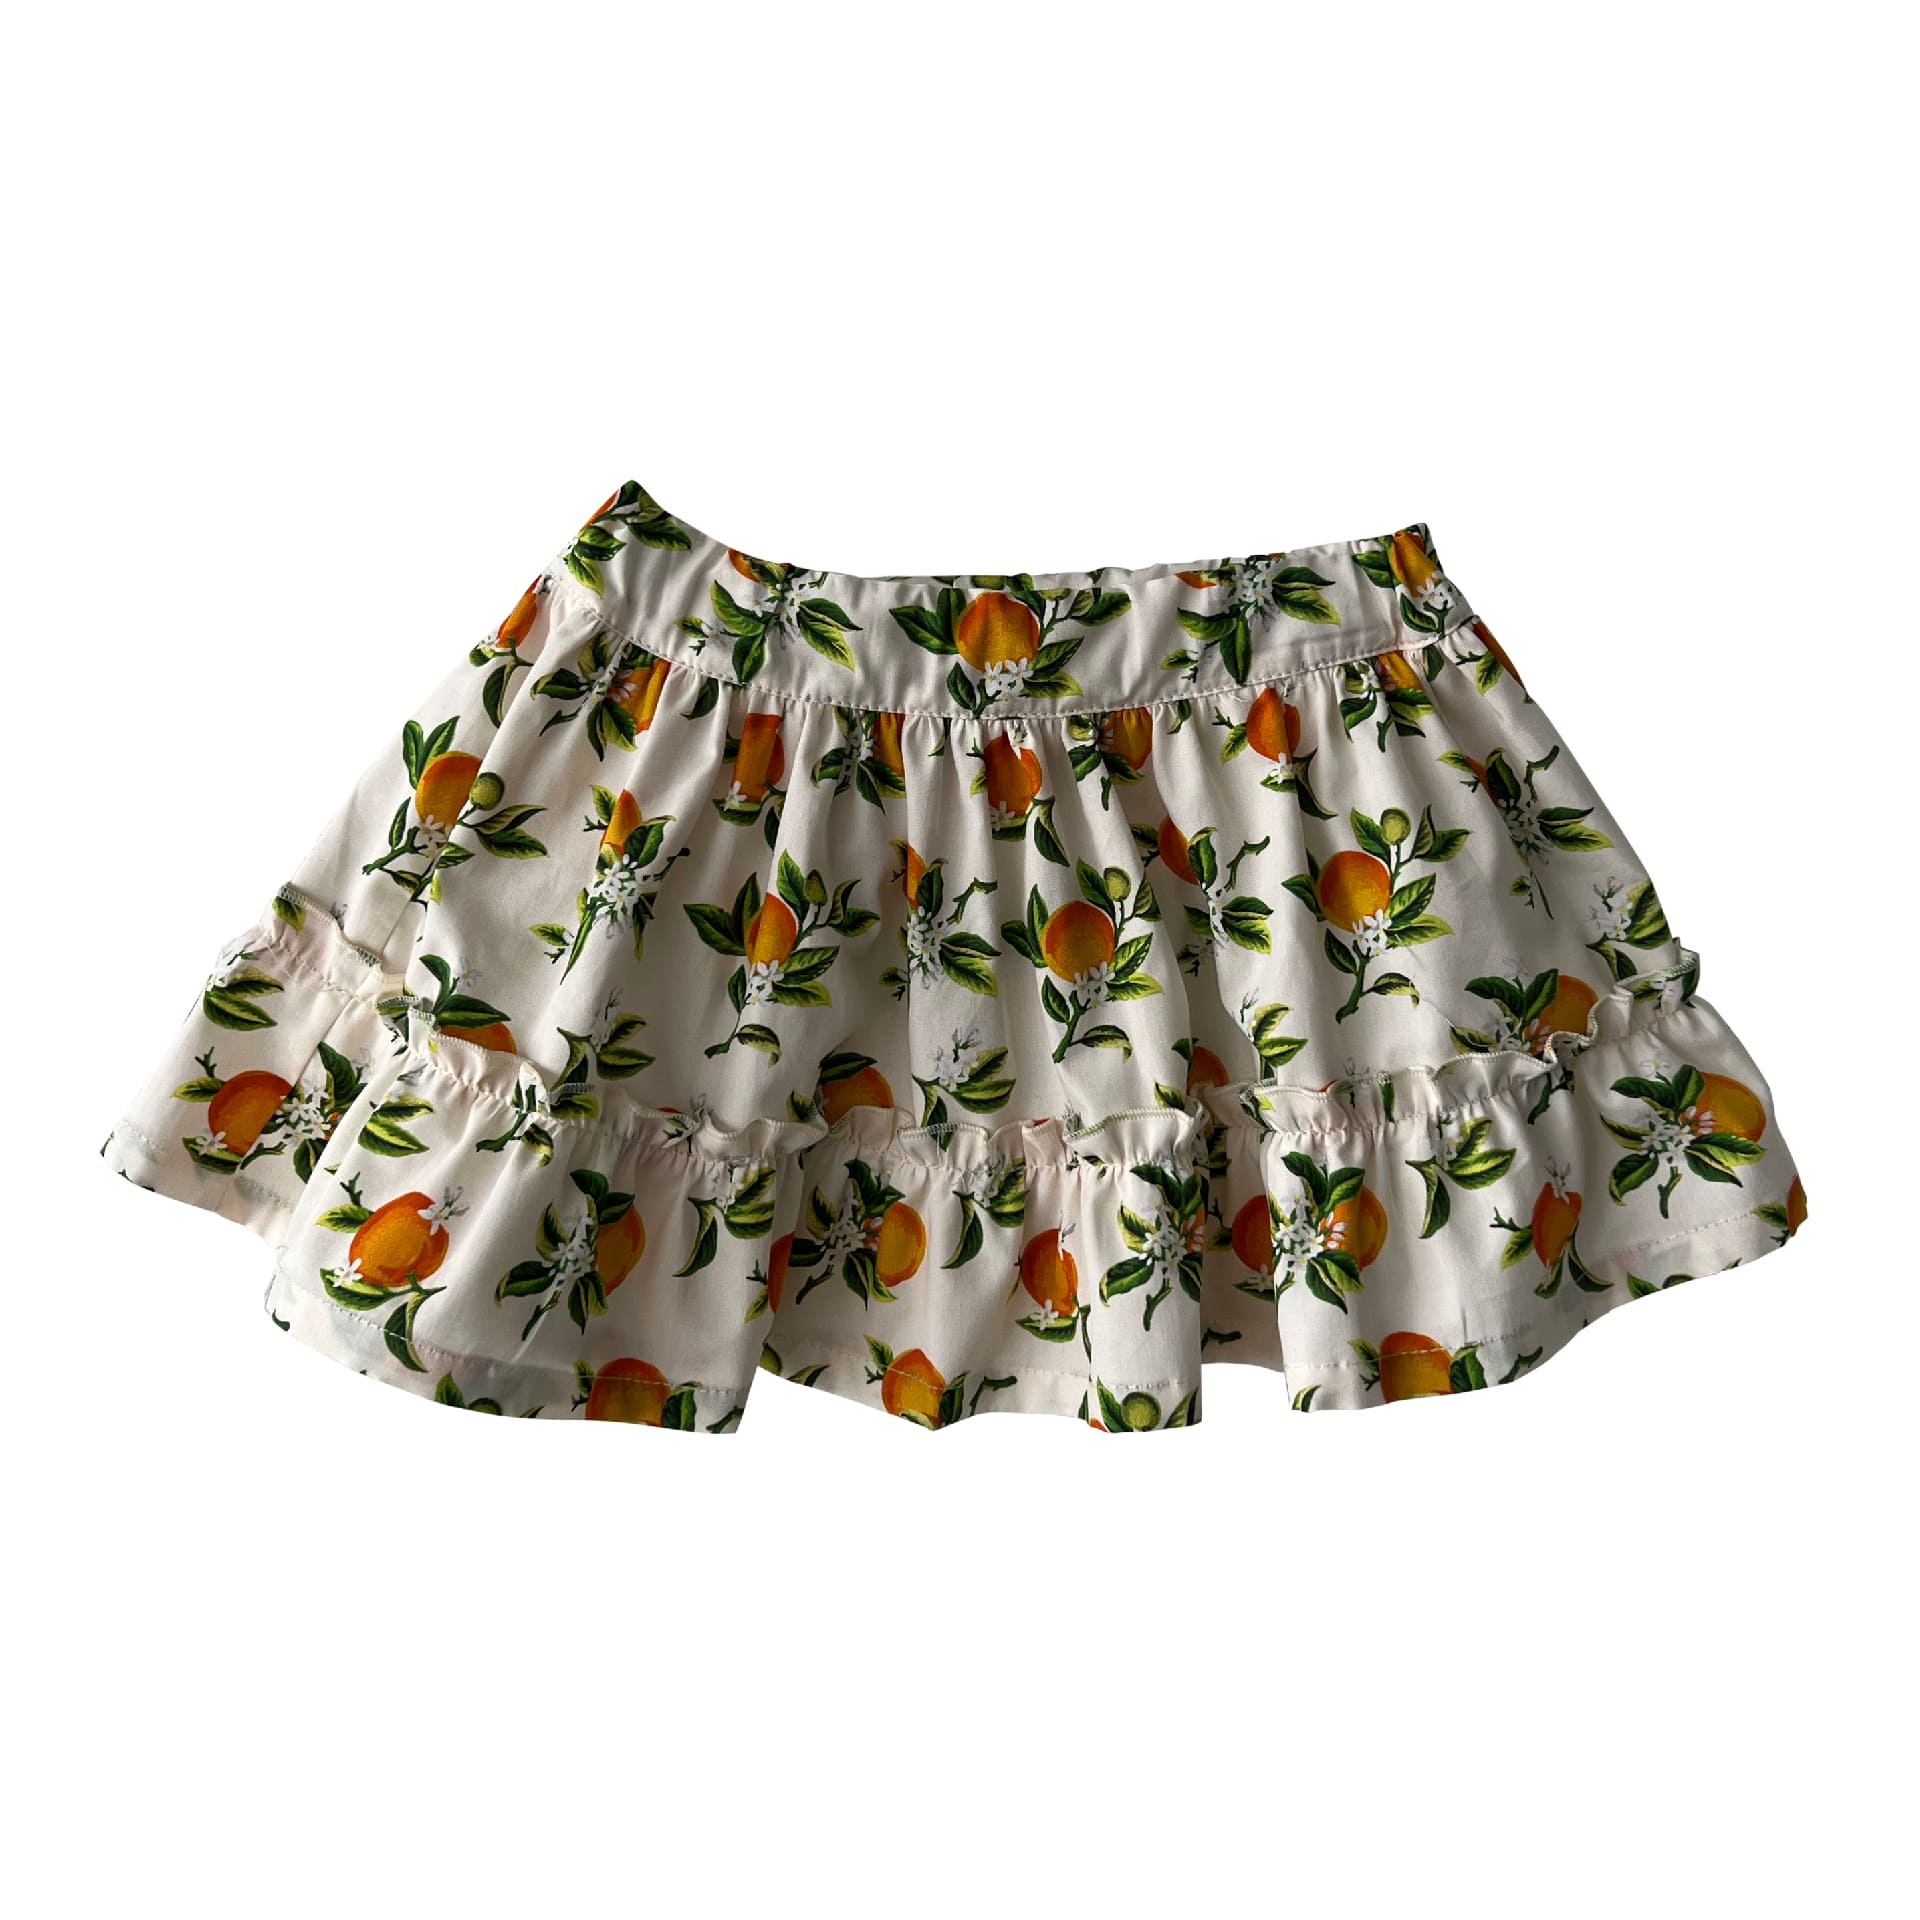 Oranges skirt